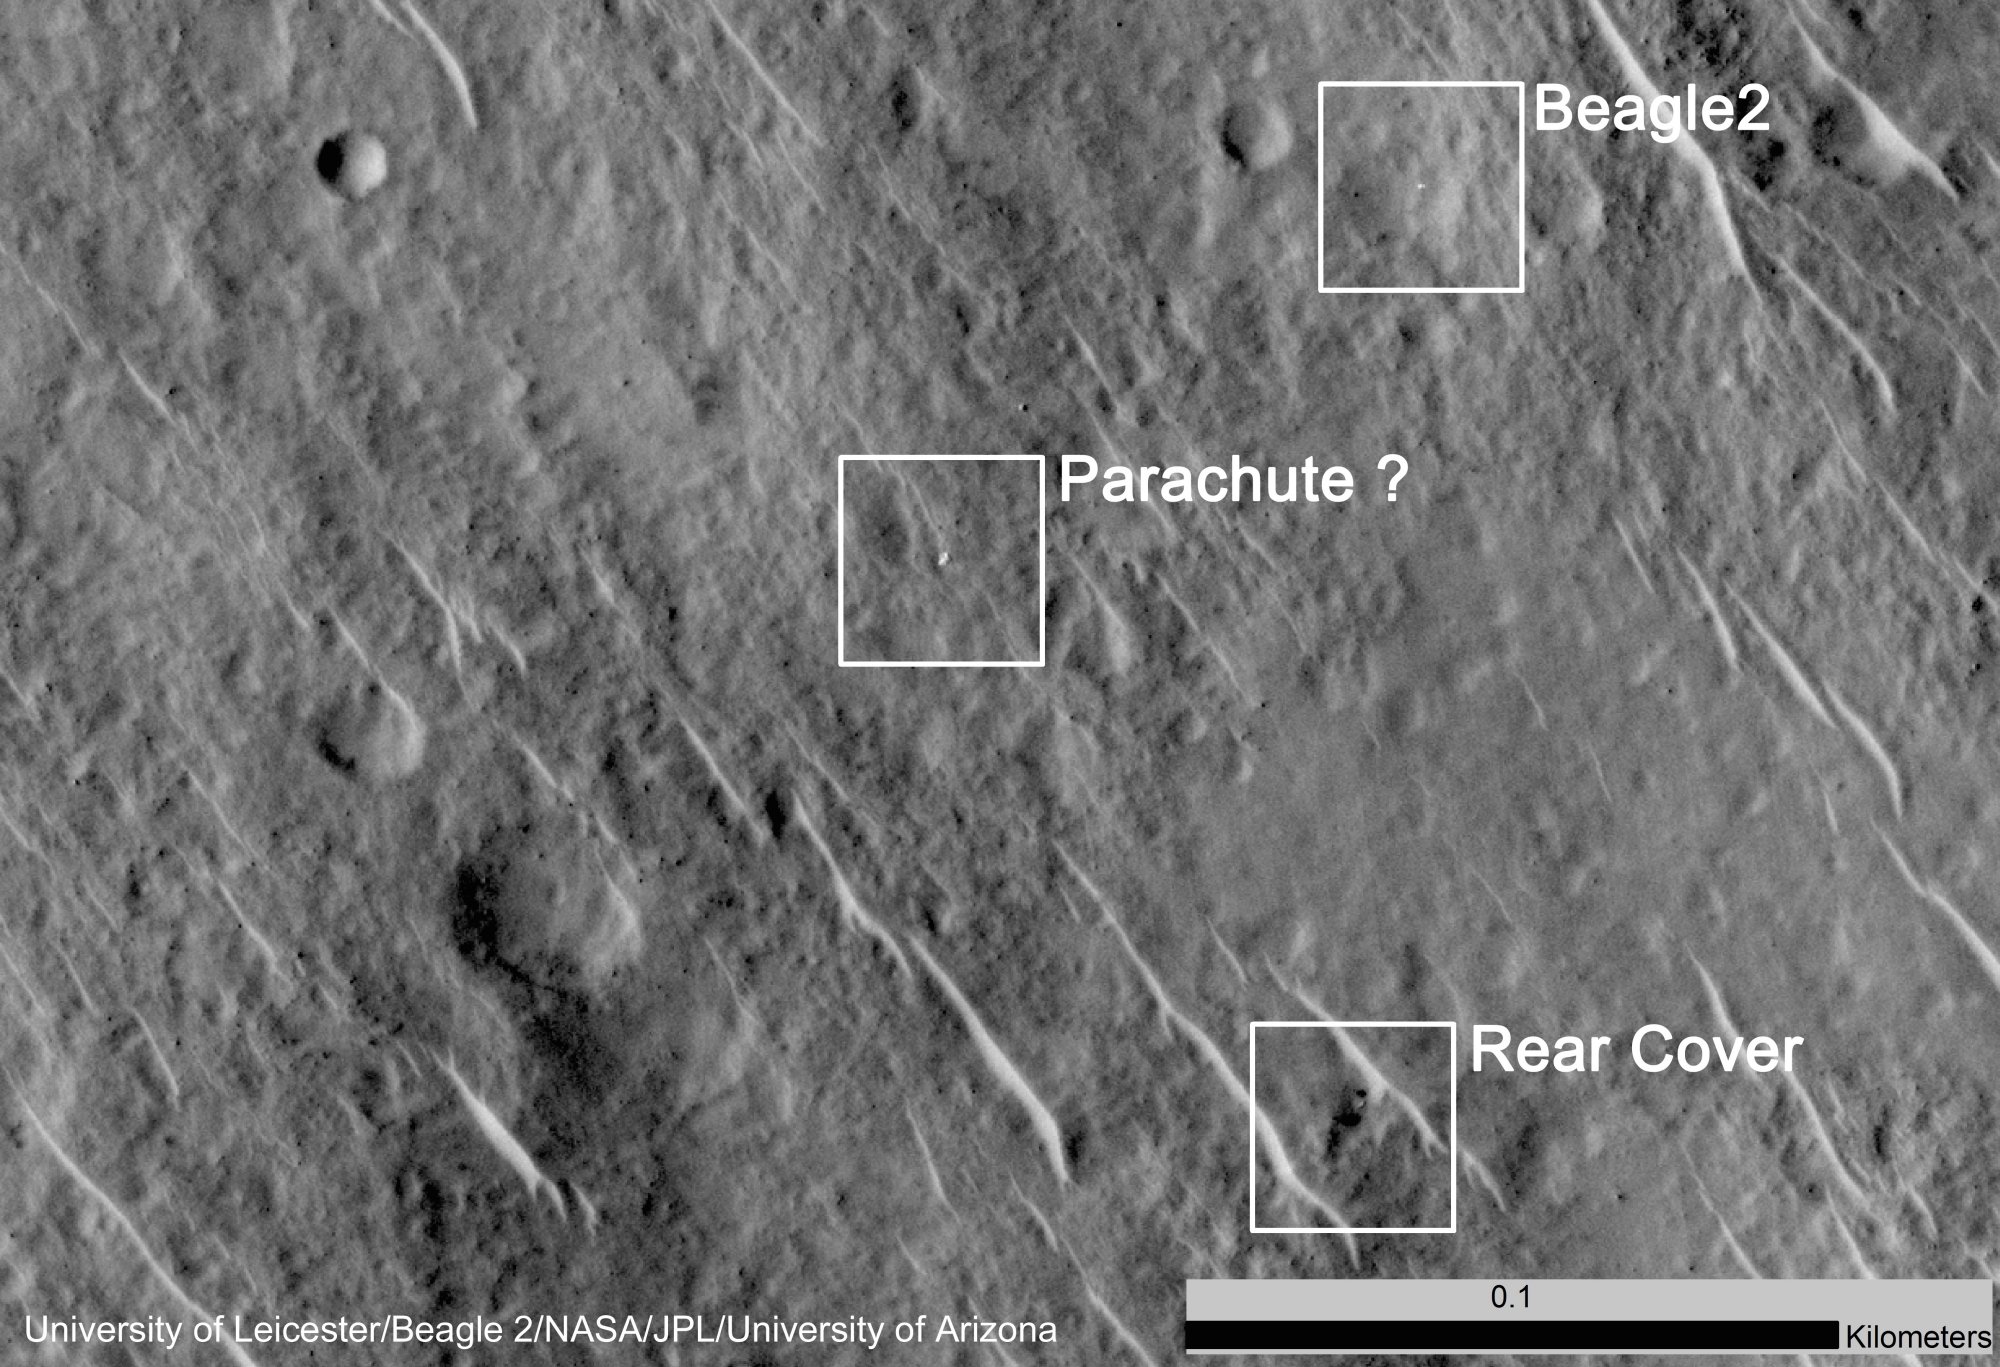  L'image saisie par HiRise. La forme blanche, à gauche, pourrait être le parachute. Vers le bas, on distingue sans doute le bouclier arrière&nbsp;(Rear cover) et, en haut, Beagle 2 lui-même. © University of Leicester/ Beagle 2/Nasa/JPL/University of Arizona